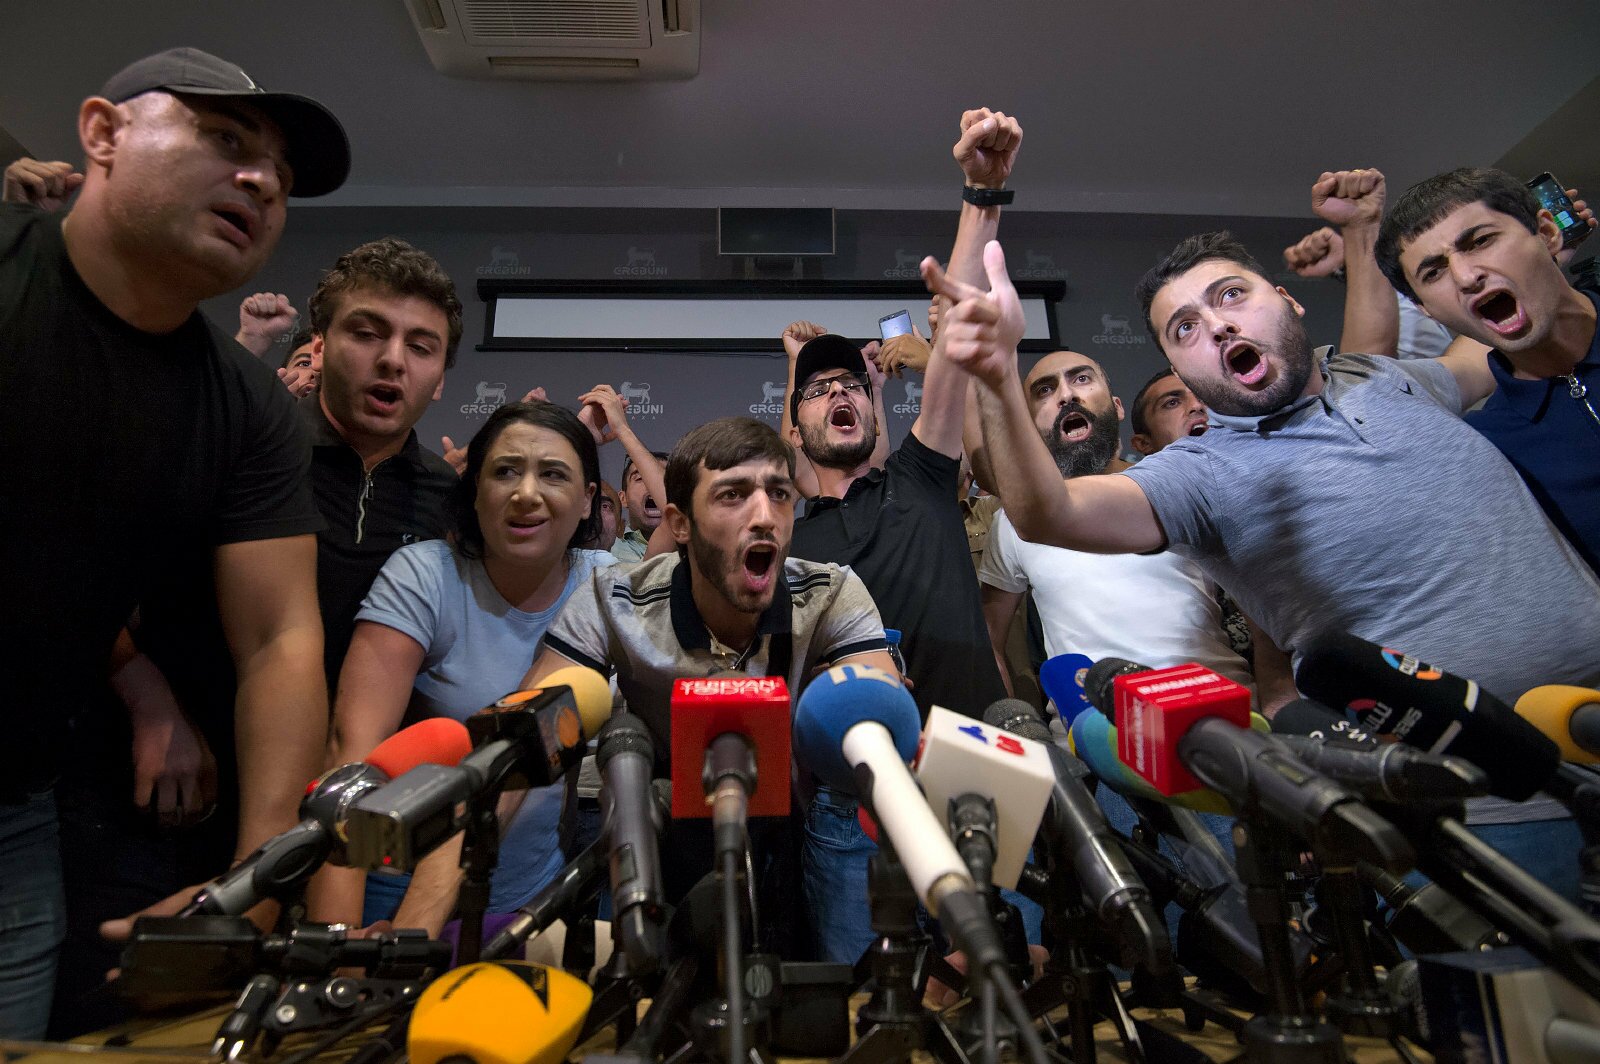 Десятки людей с криками “Убийца!” прорвались к экс-президенту Армении Кочаряну